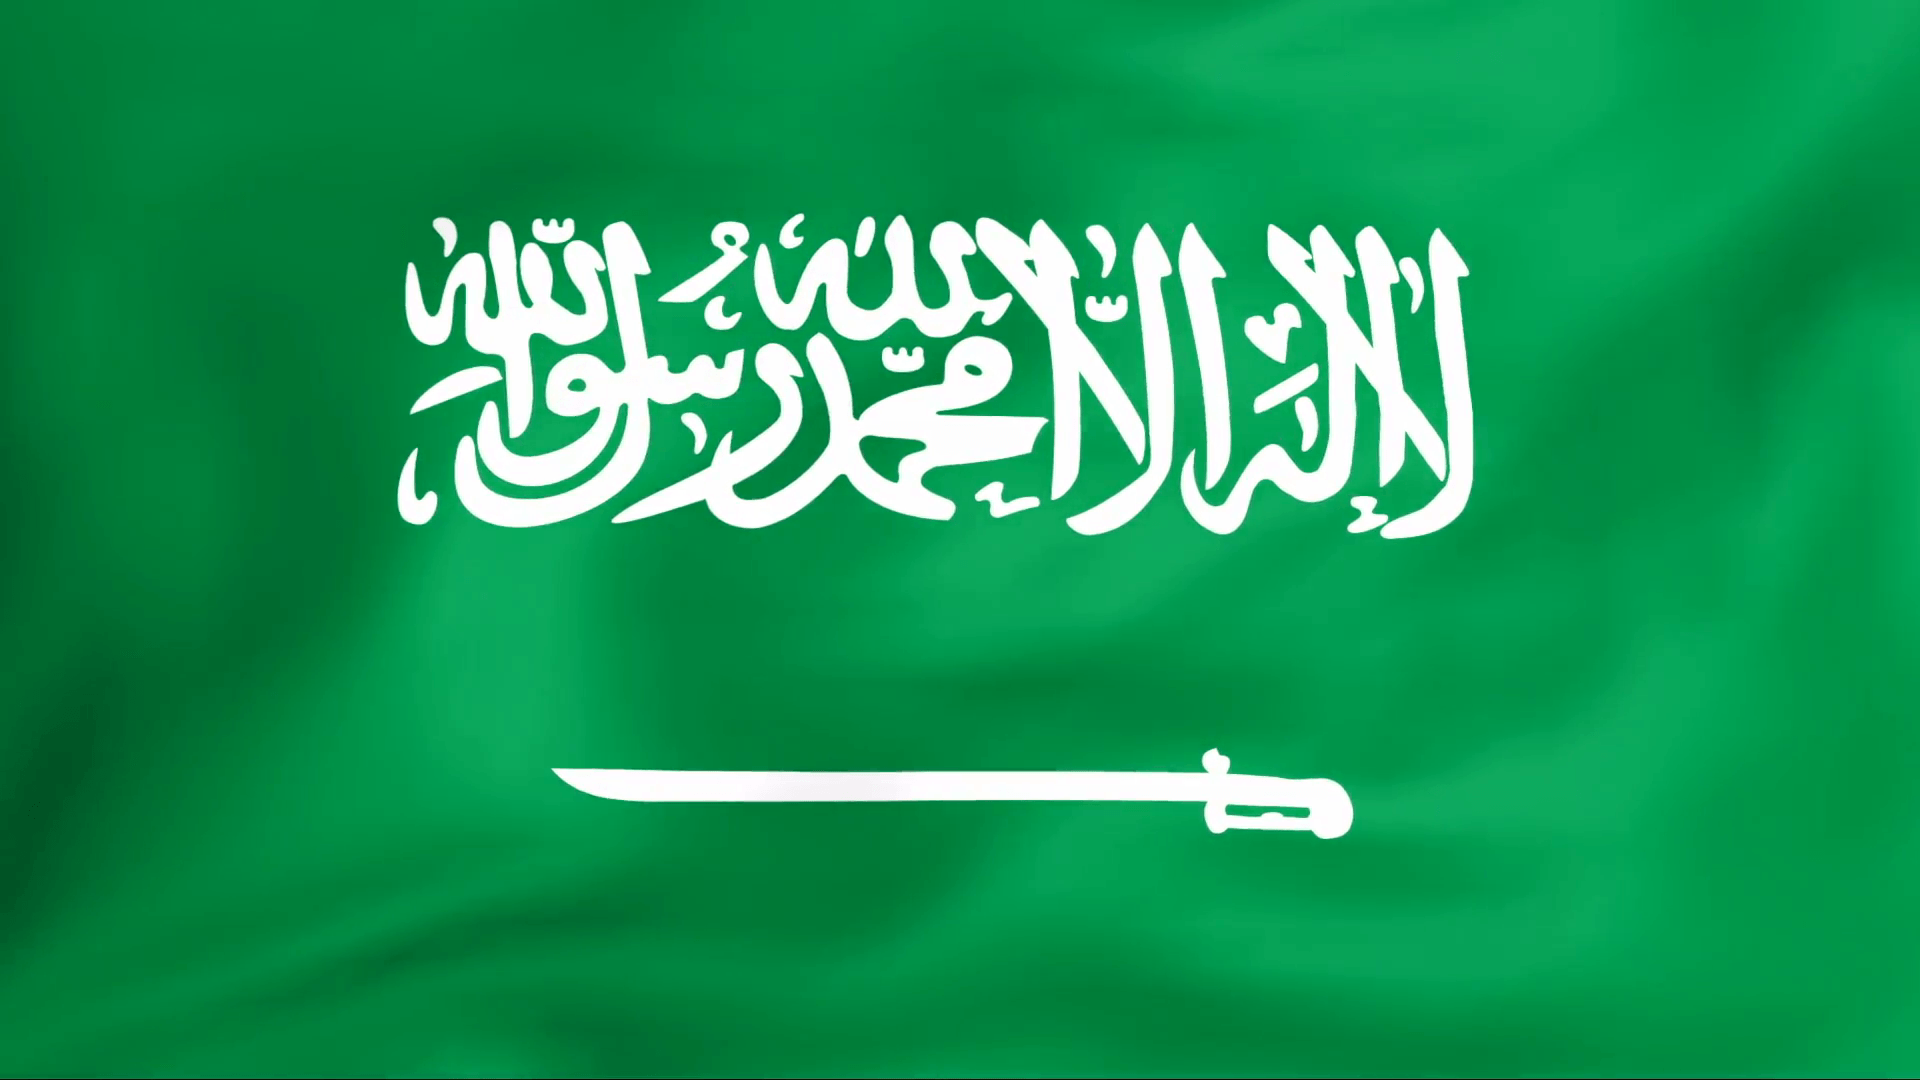 Saudi Arabia Flag Wallpapers - Wallpaper Cave